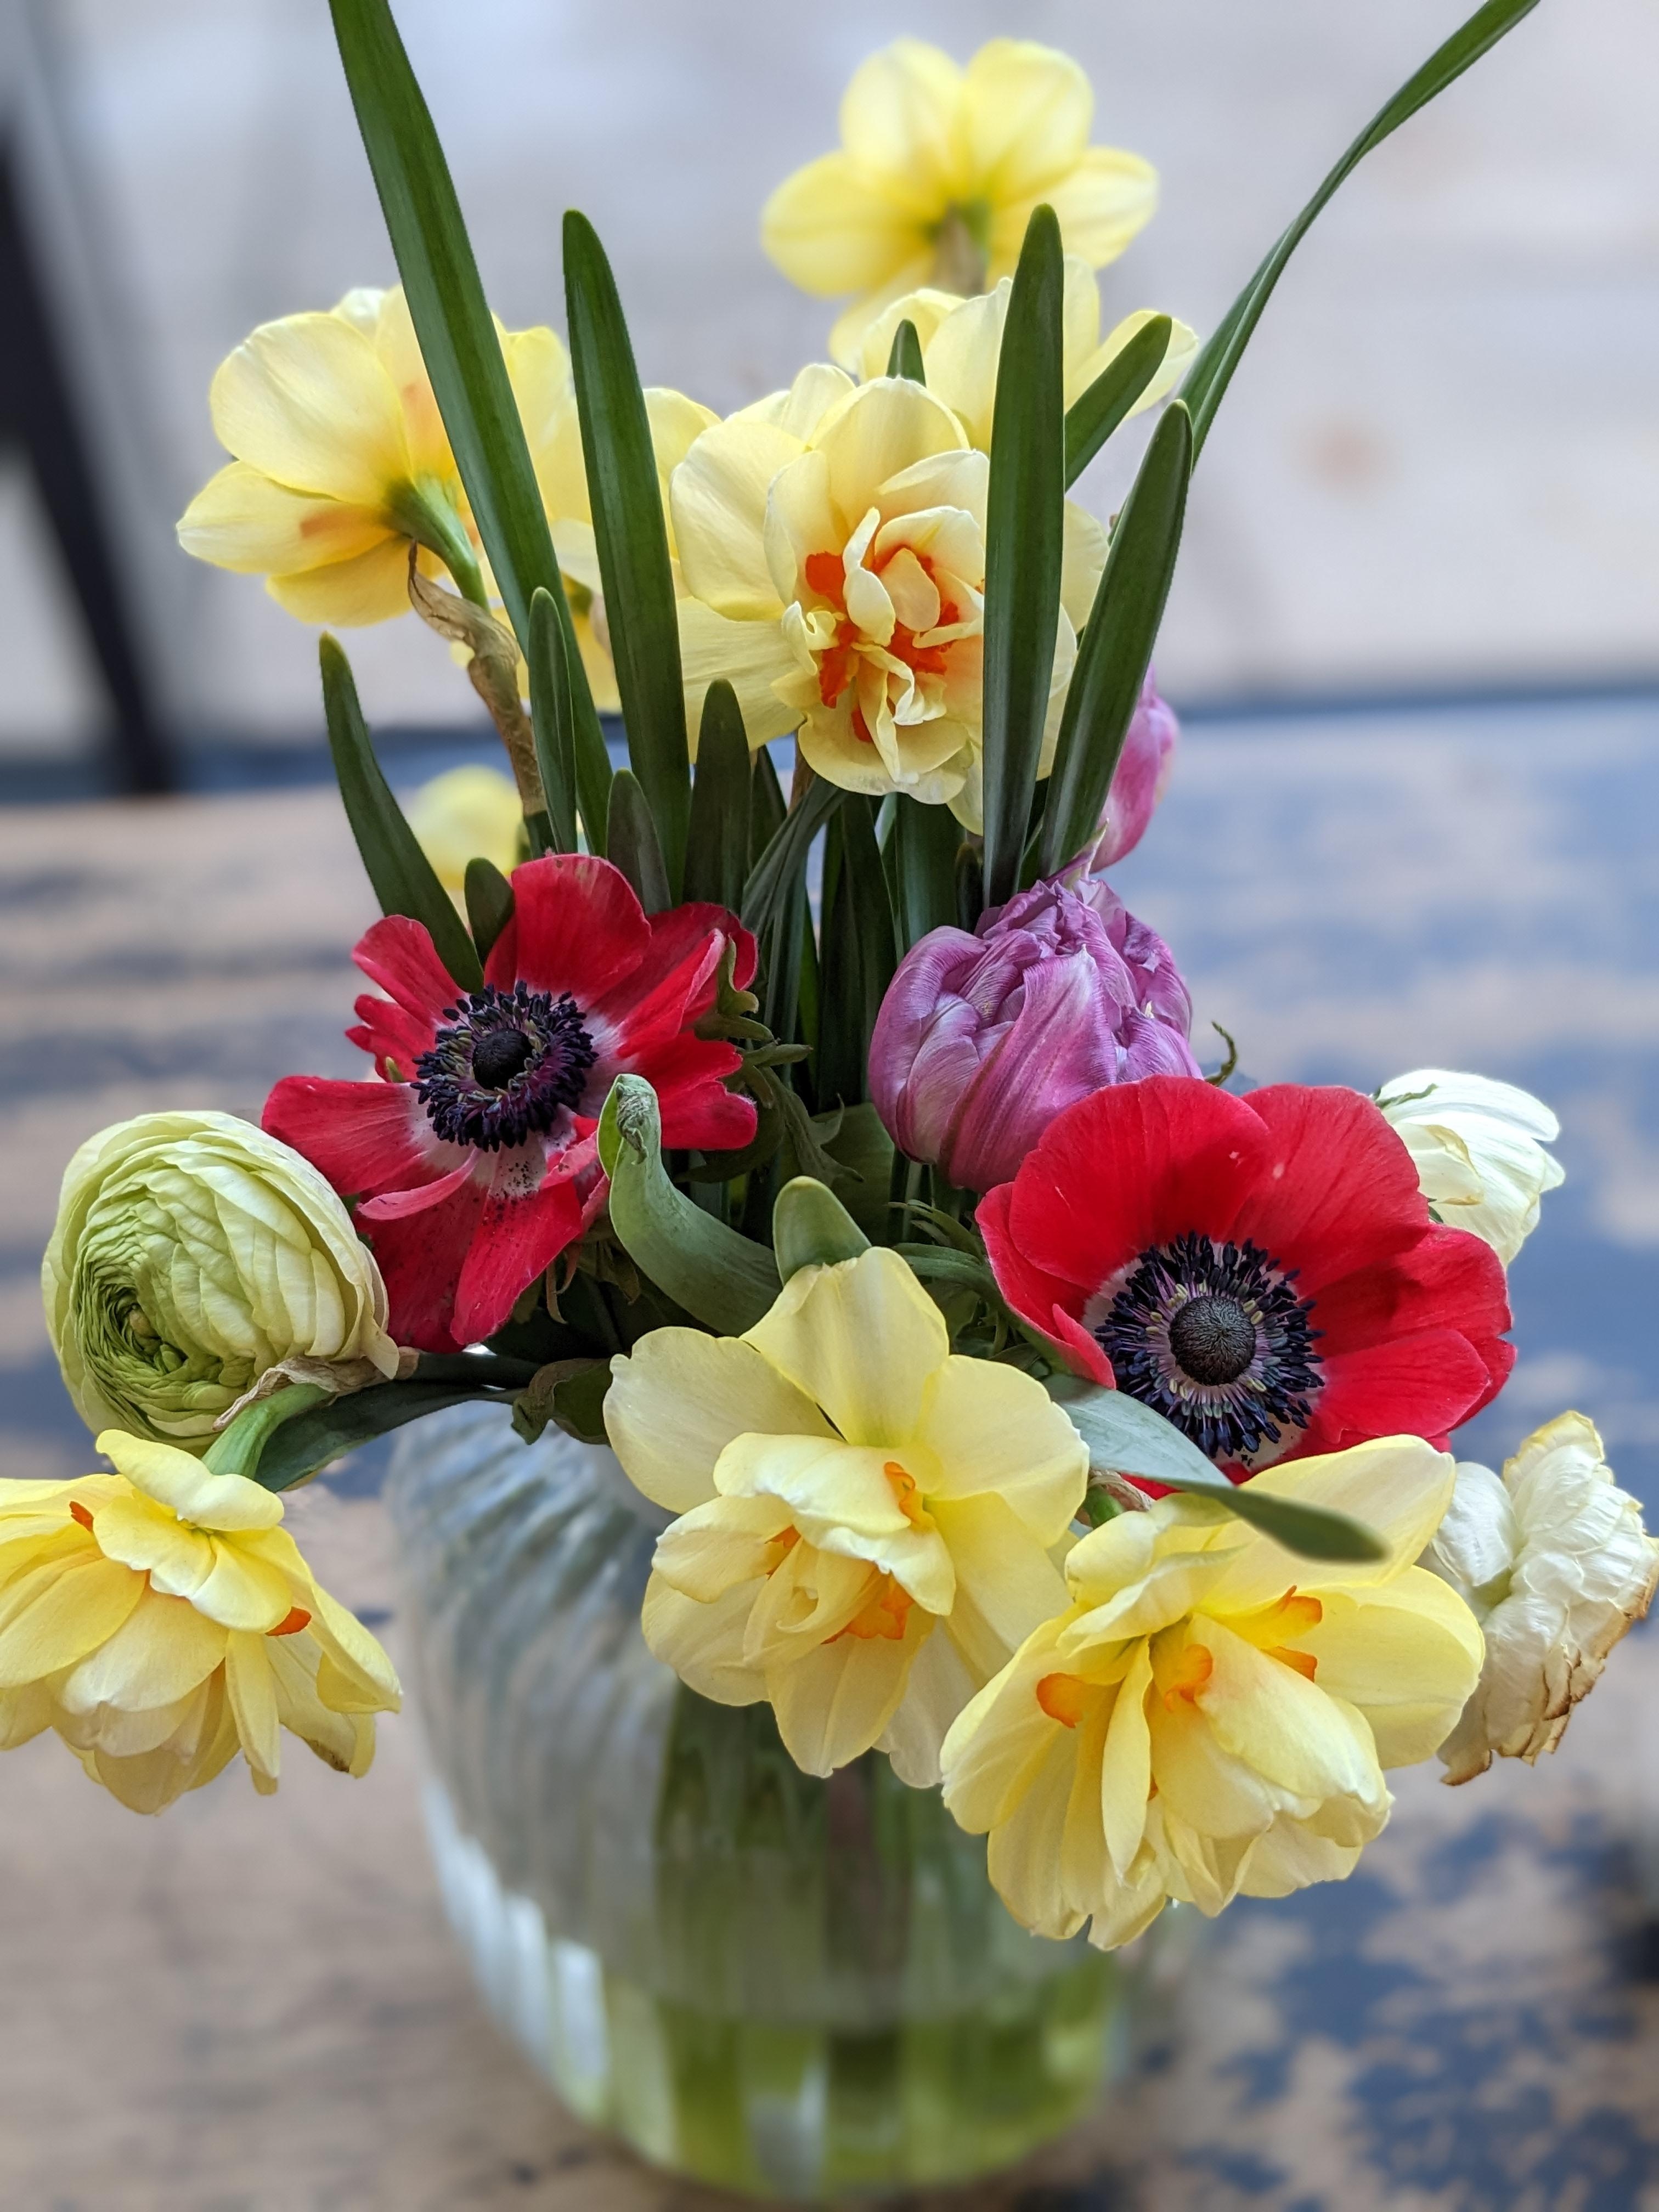 Der Frühling zieht ein 🌸☀️
#blumen #flowerpower #blumenstrauß #blumenliebe #frühling